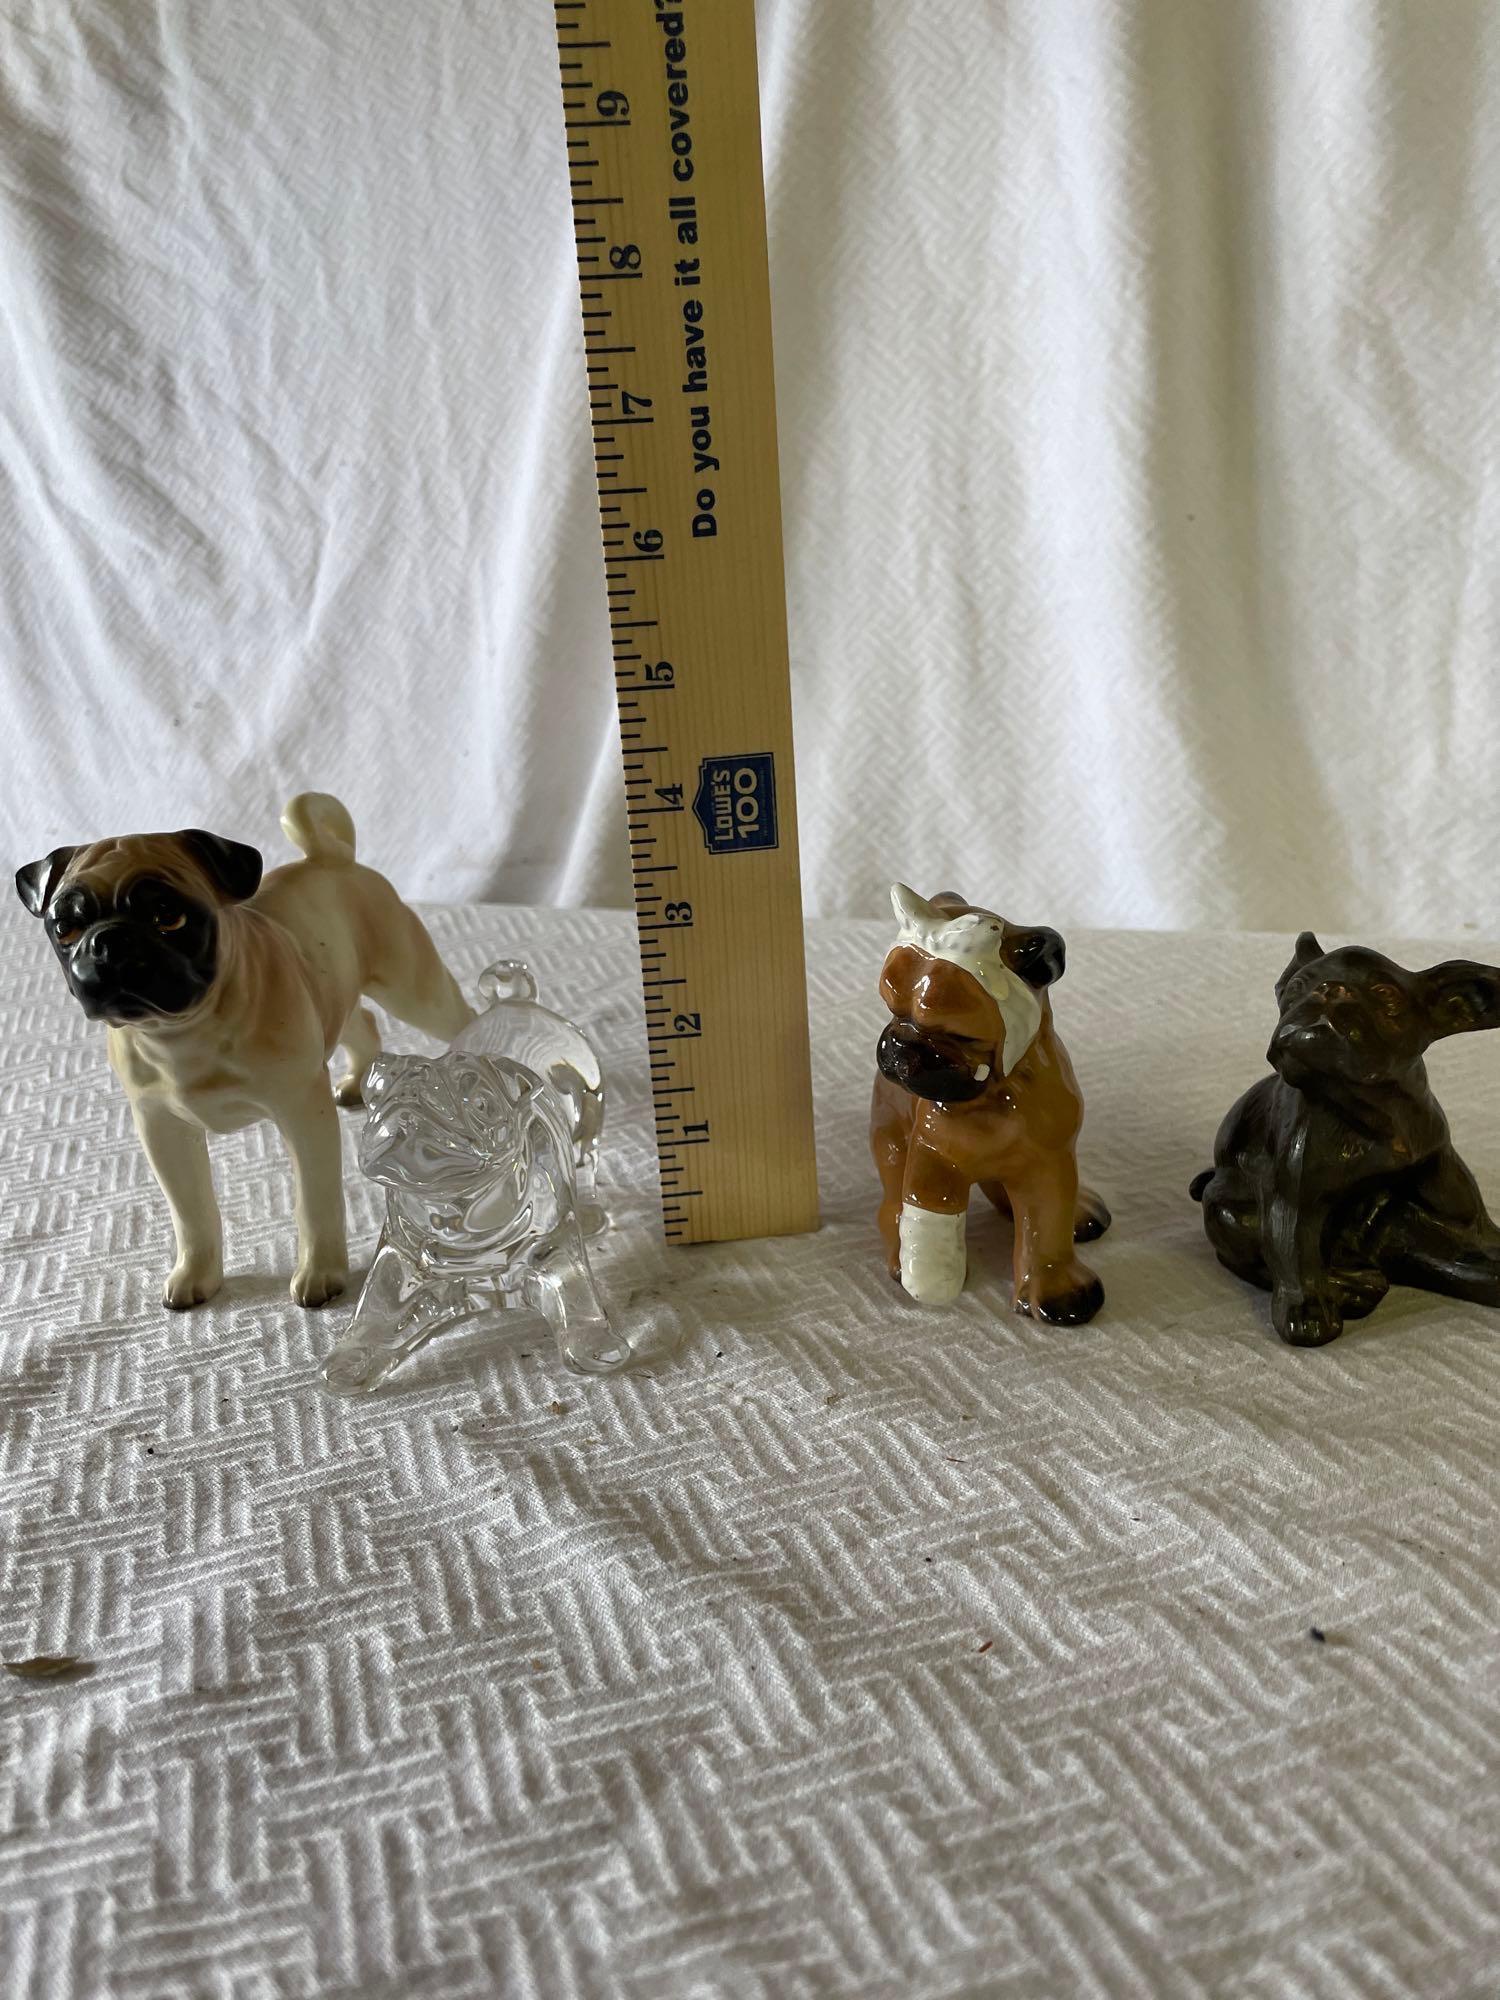 Assorted Pug Figurines